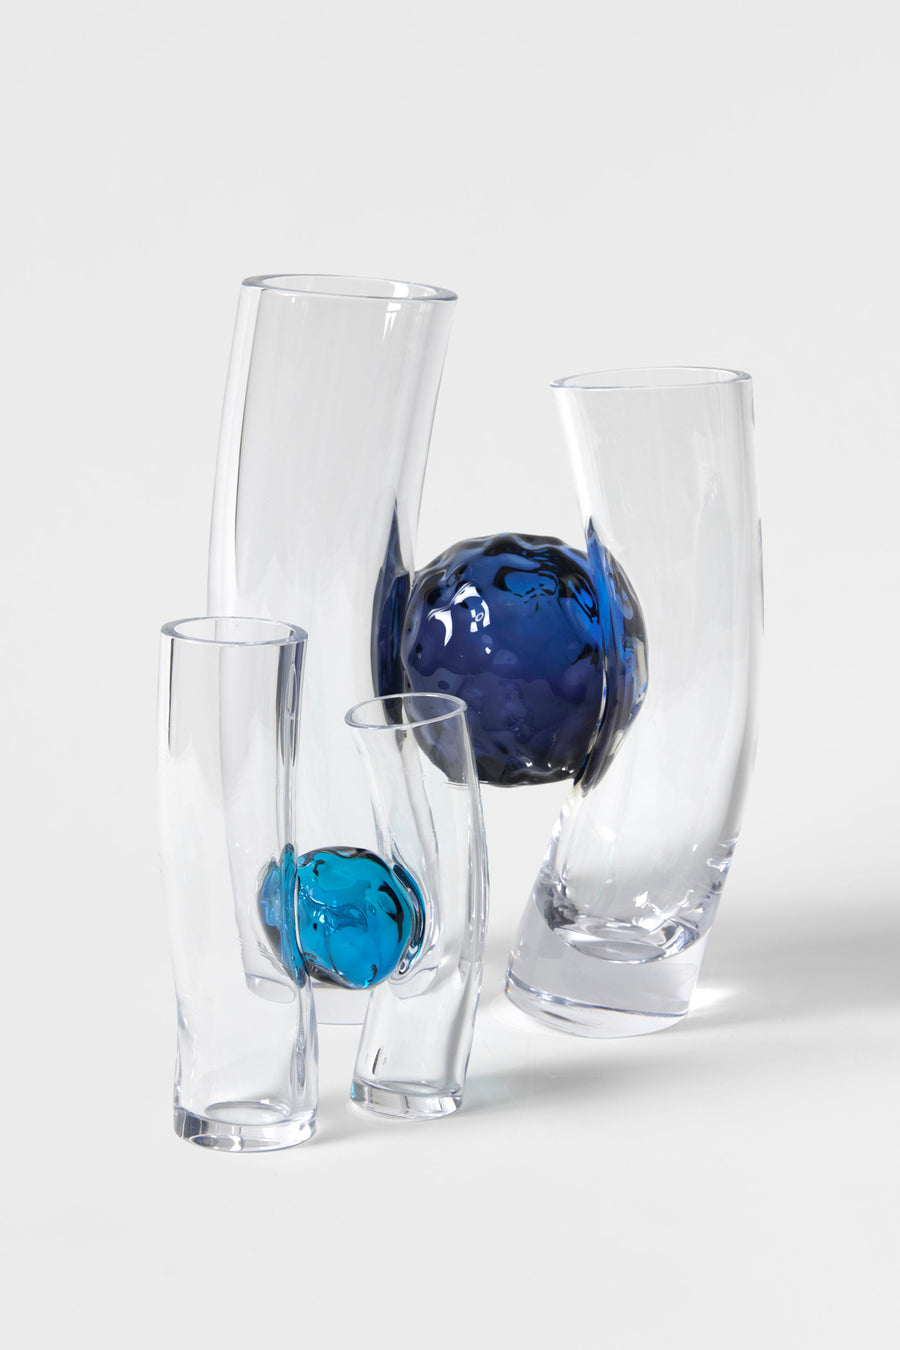 Flavie Audi artist glass blowing glass vase les vases communiquant blue series